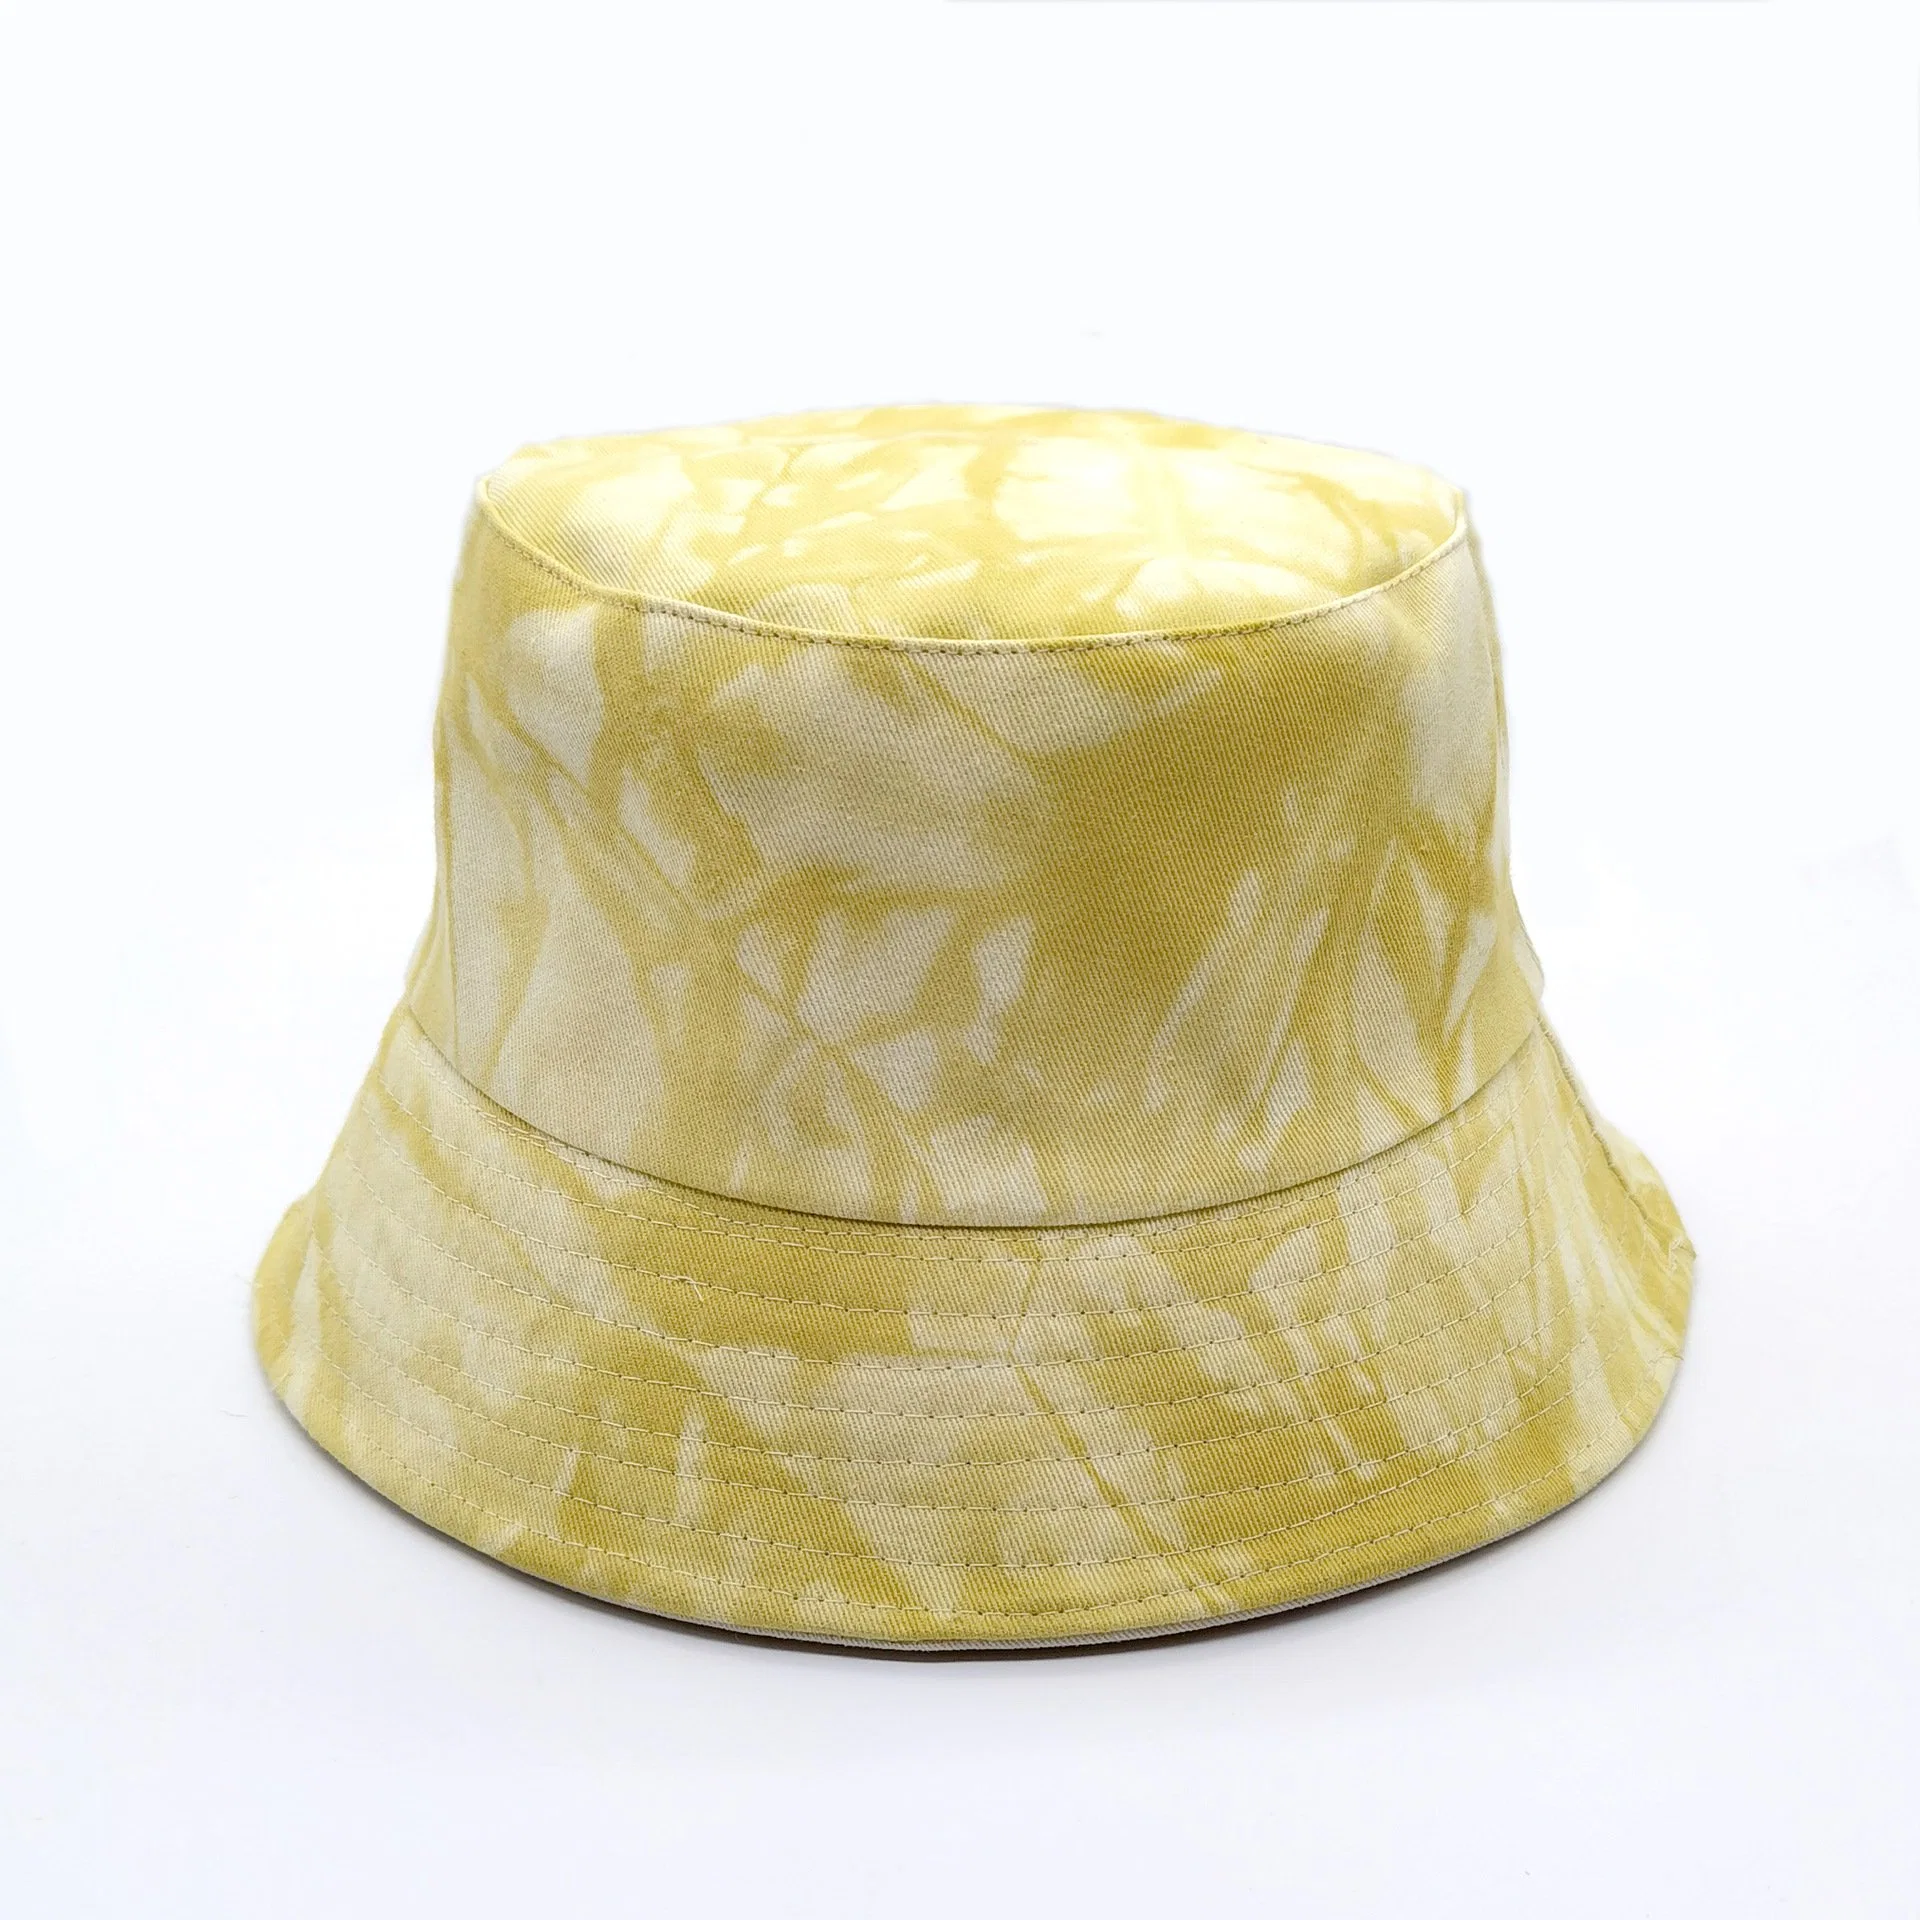 El algodón OEM Tie muriendo la impresión de la Cuchara Cuchara Visor de verano en la playa Hat Hat